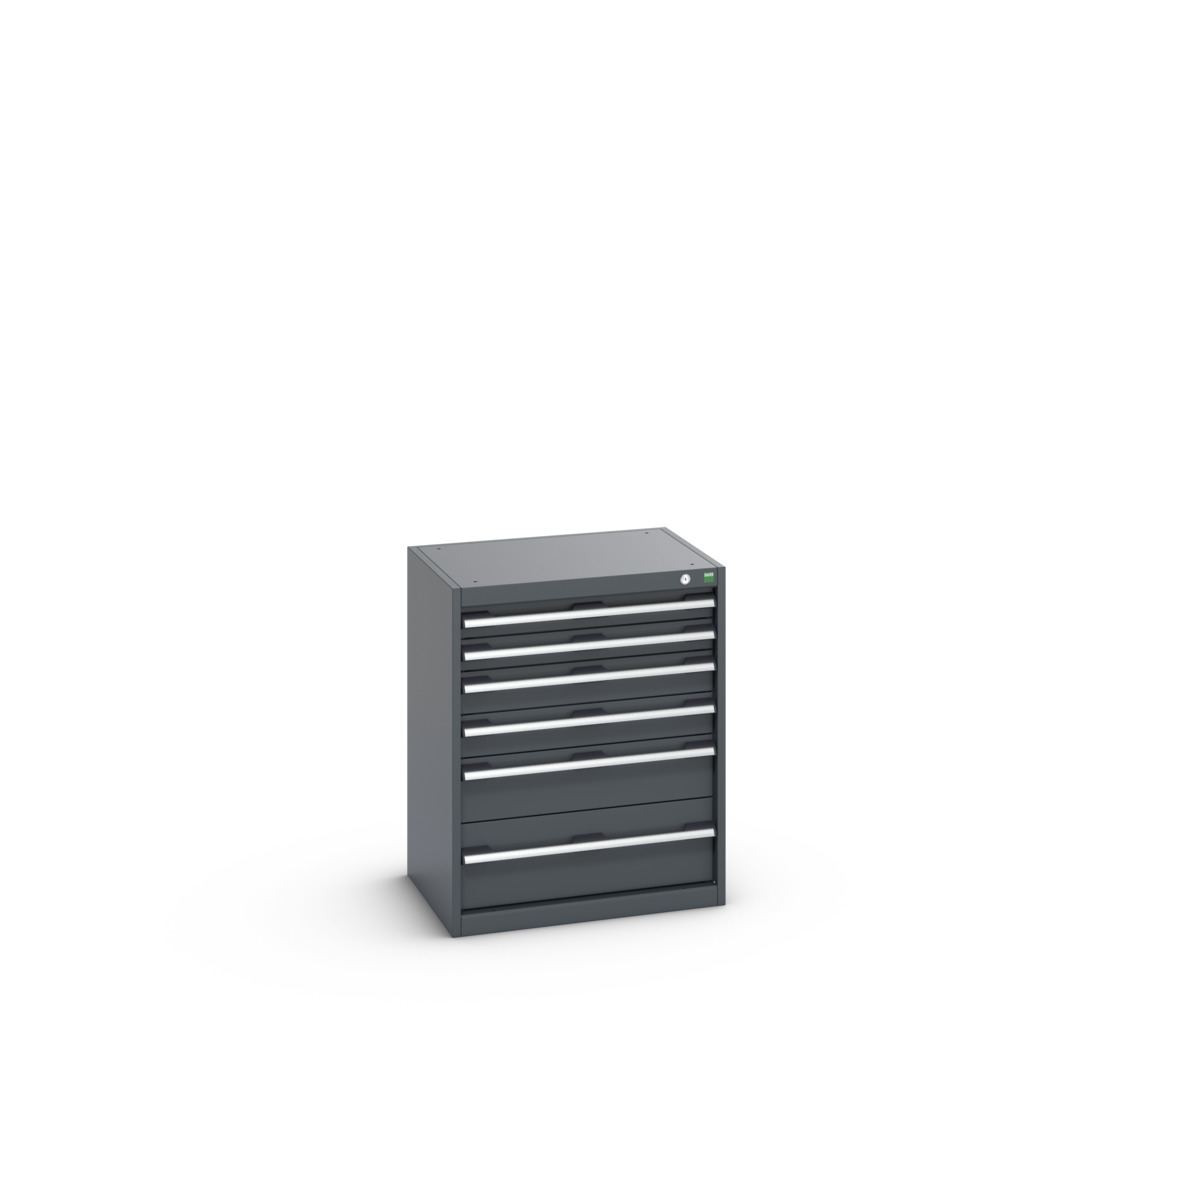 40011047.77V - cubio drawer cabinet